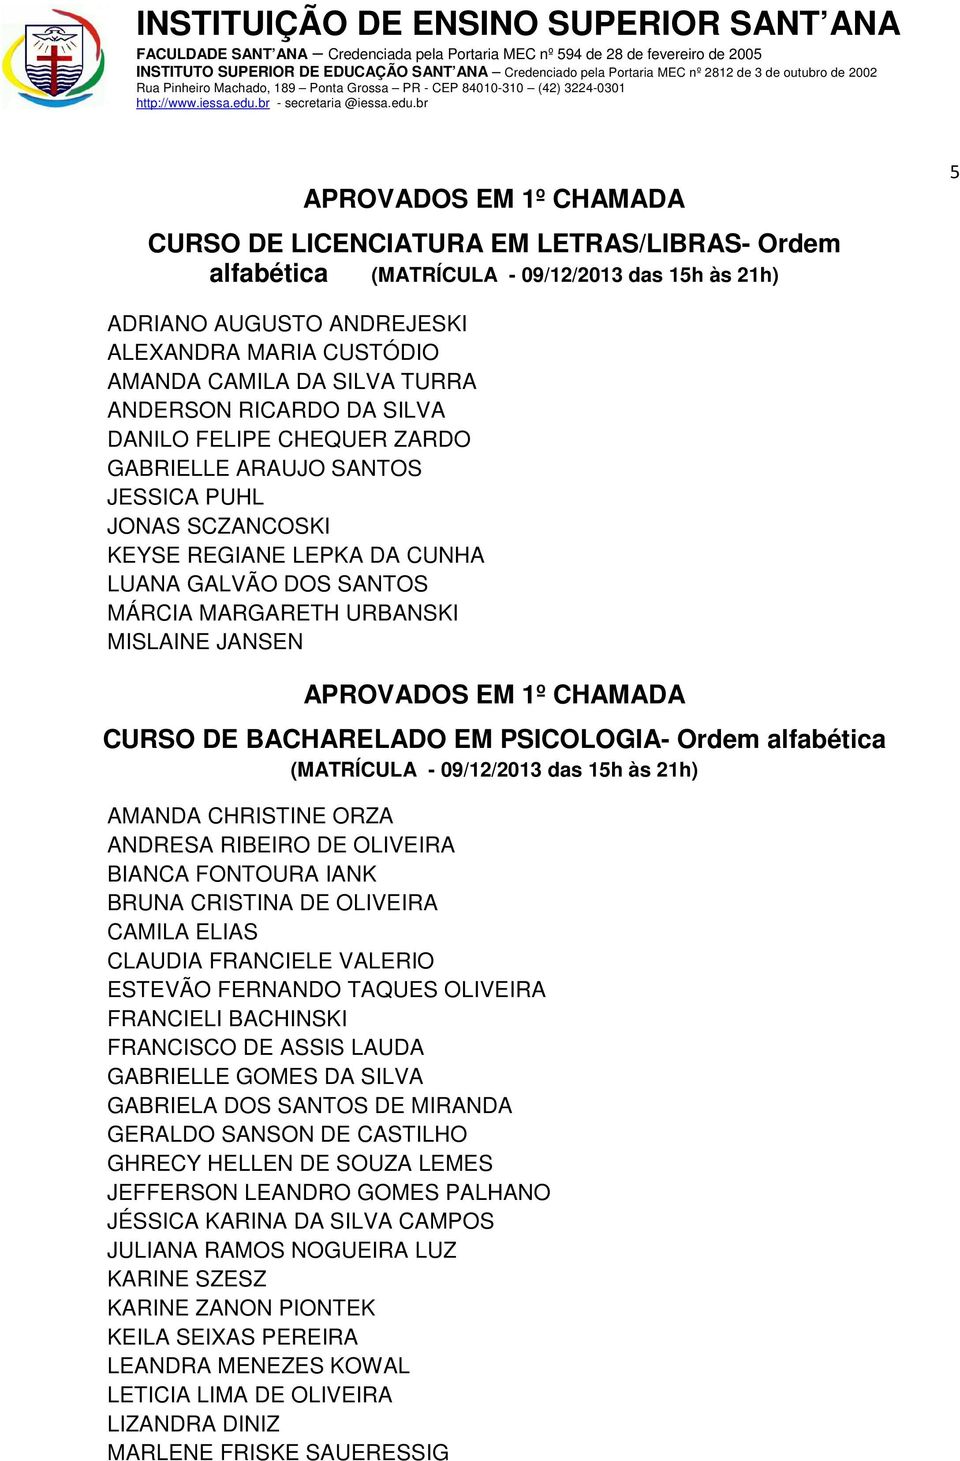 BACHARELADO EM PSICOLOGIA- Ordem alfabética (MATRÍCULA - 09/12/2013 das 15h às 21h) AMANDA CHRISTINE ORZA ANDRESA RIBEIRO DE OLIVEIRA BIANCA FONTOURA IANK BRUNA CRISTINA DE OLIVEIRA CAMILA ELIAS